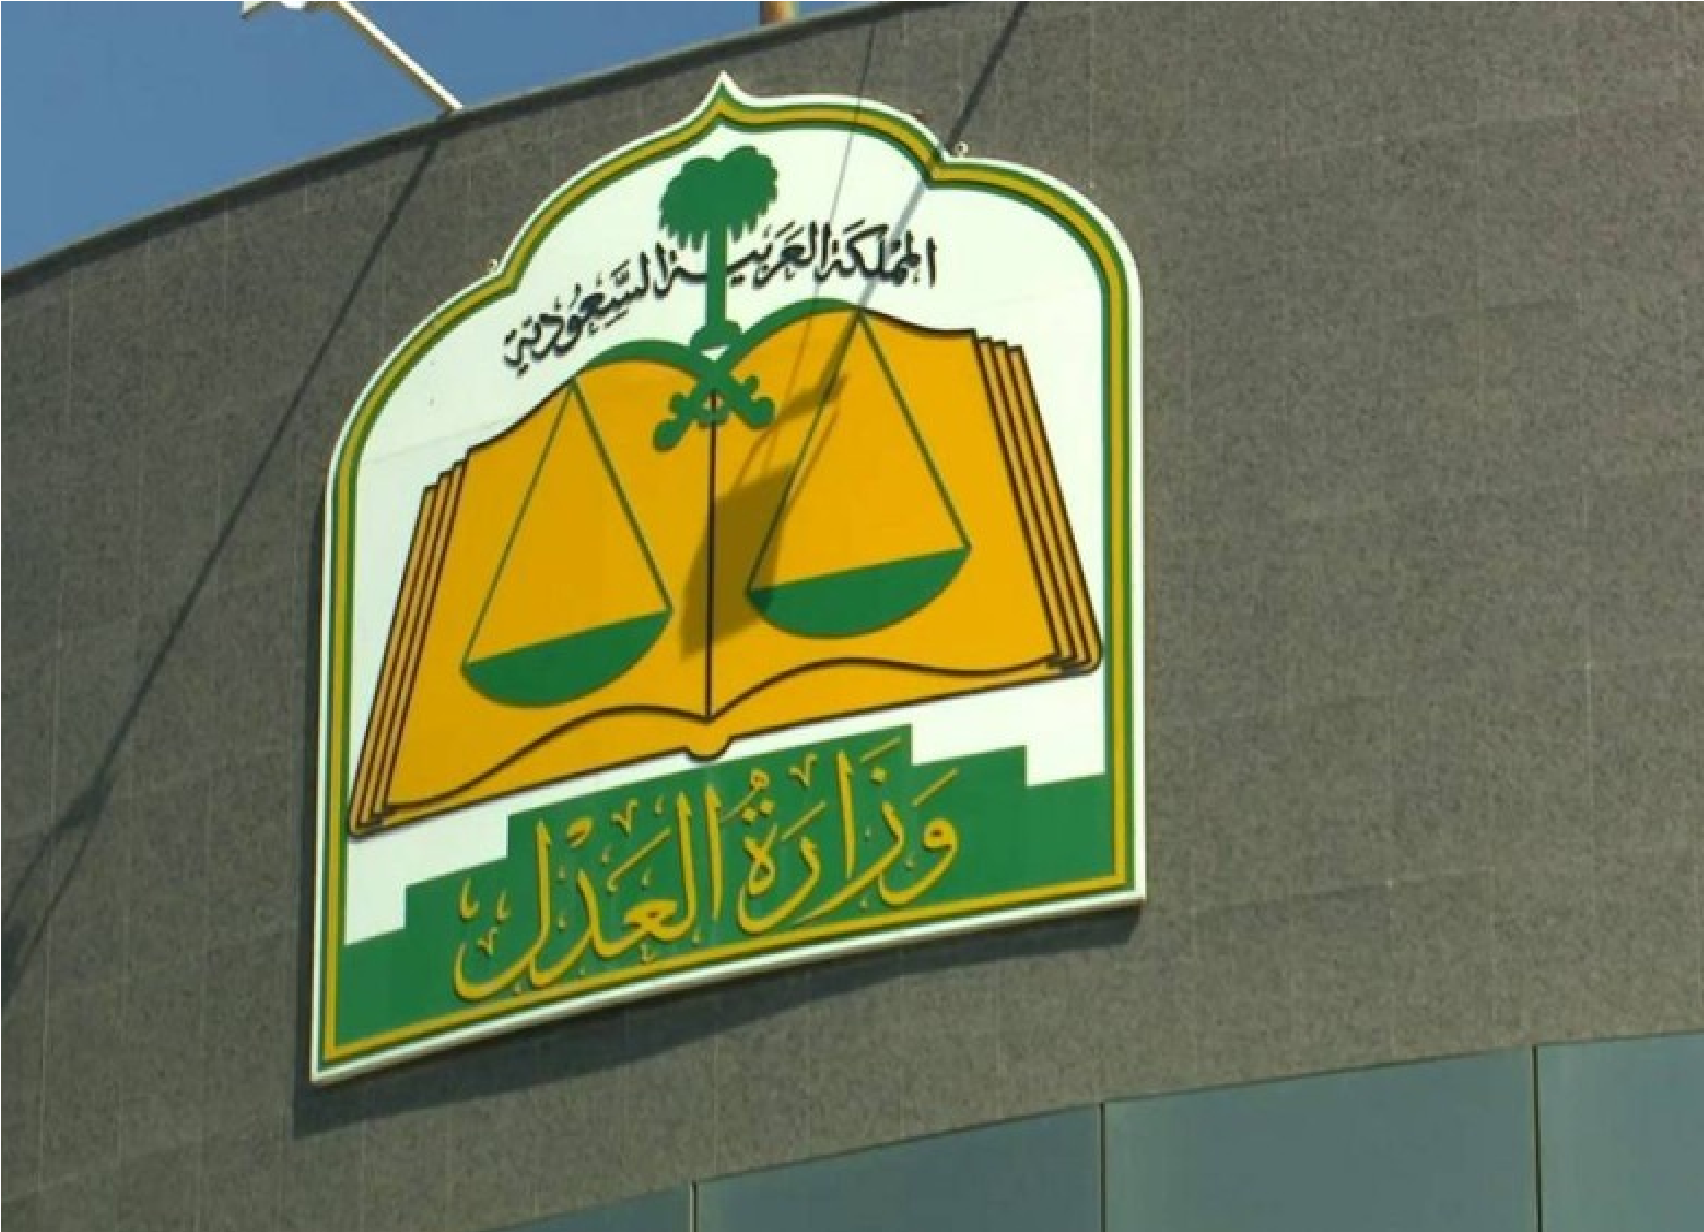 طريقة إلغاء إيقاف الخدمات للمواطن السعودي 1445 عبر منصة ناجز new.najiz.sa وزارة العدل توضح